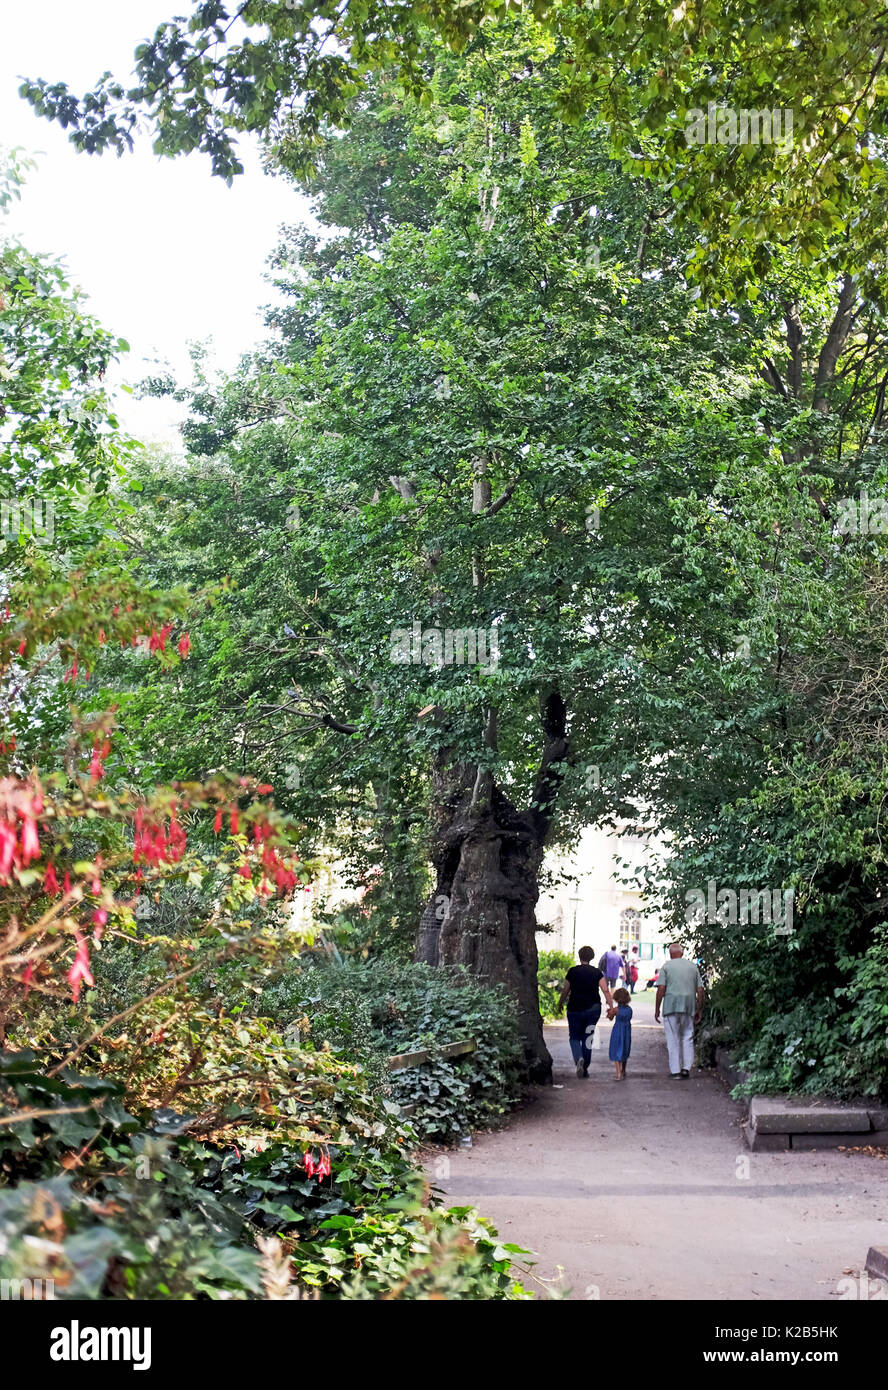 Der älteste Baum (fast 240 Jahre) im Royal Pavilion Gardens, die Englische Ulme in der Nähe von öffentlichen Toiletten befindet, hat Ulmensterben Krankheit Stockfoto